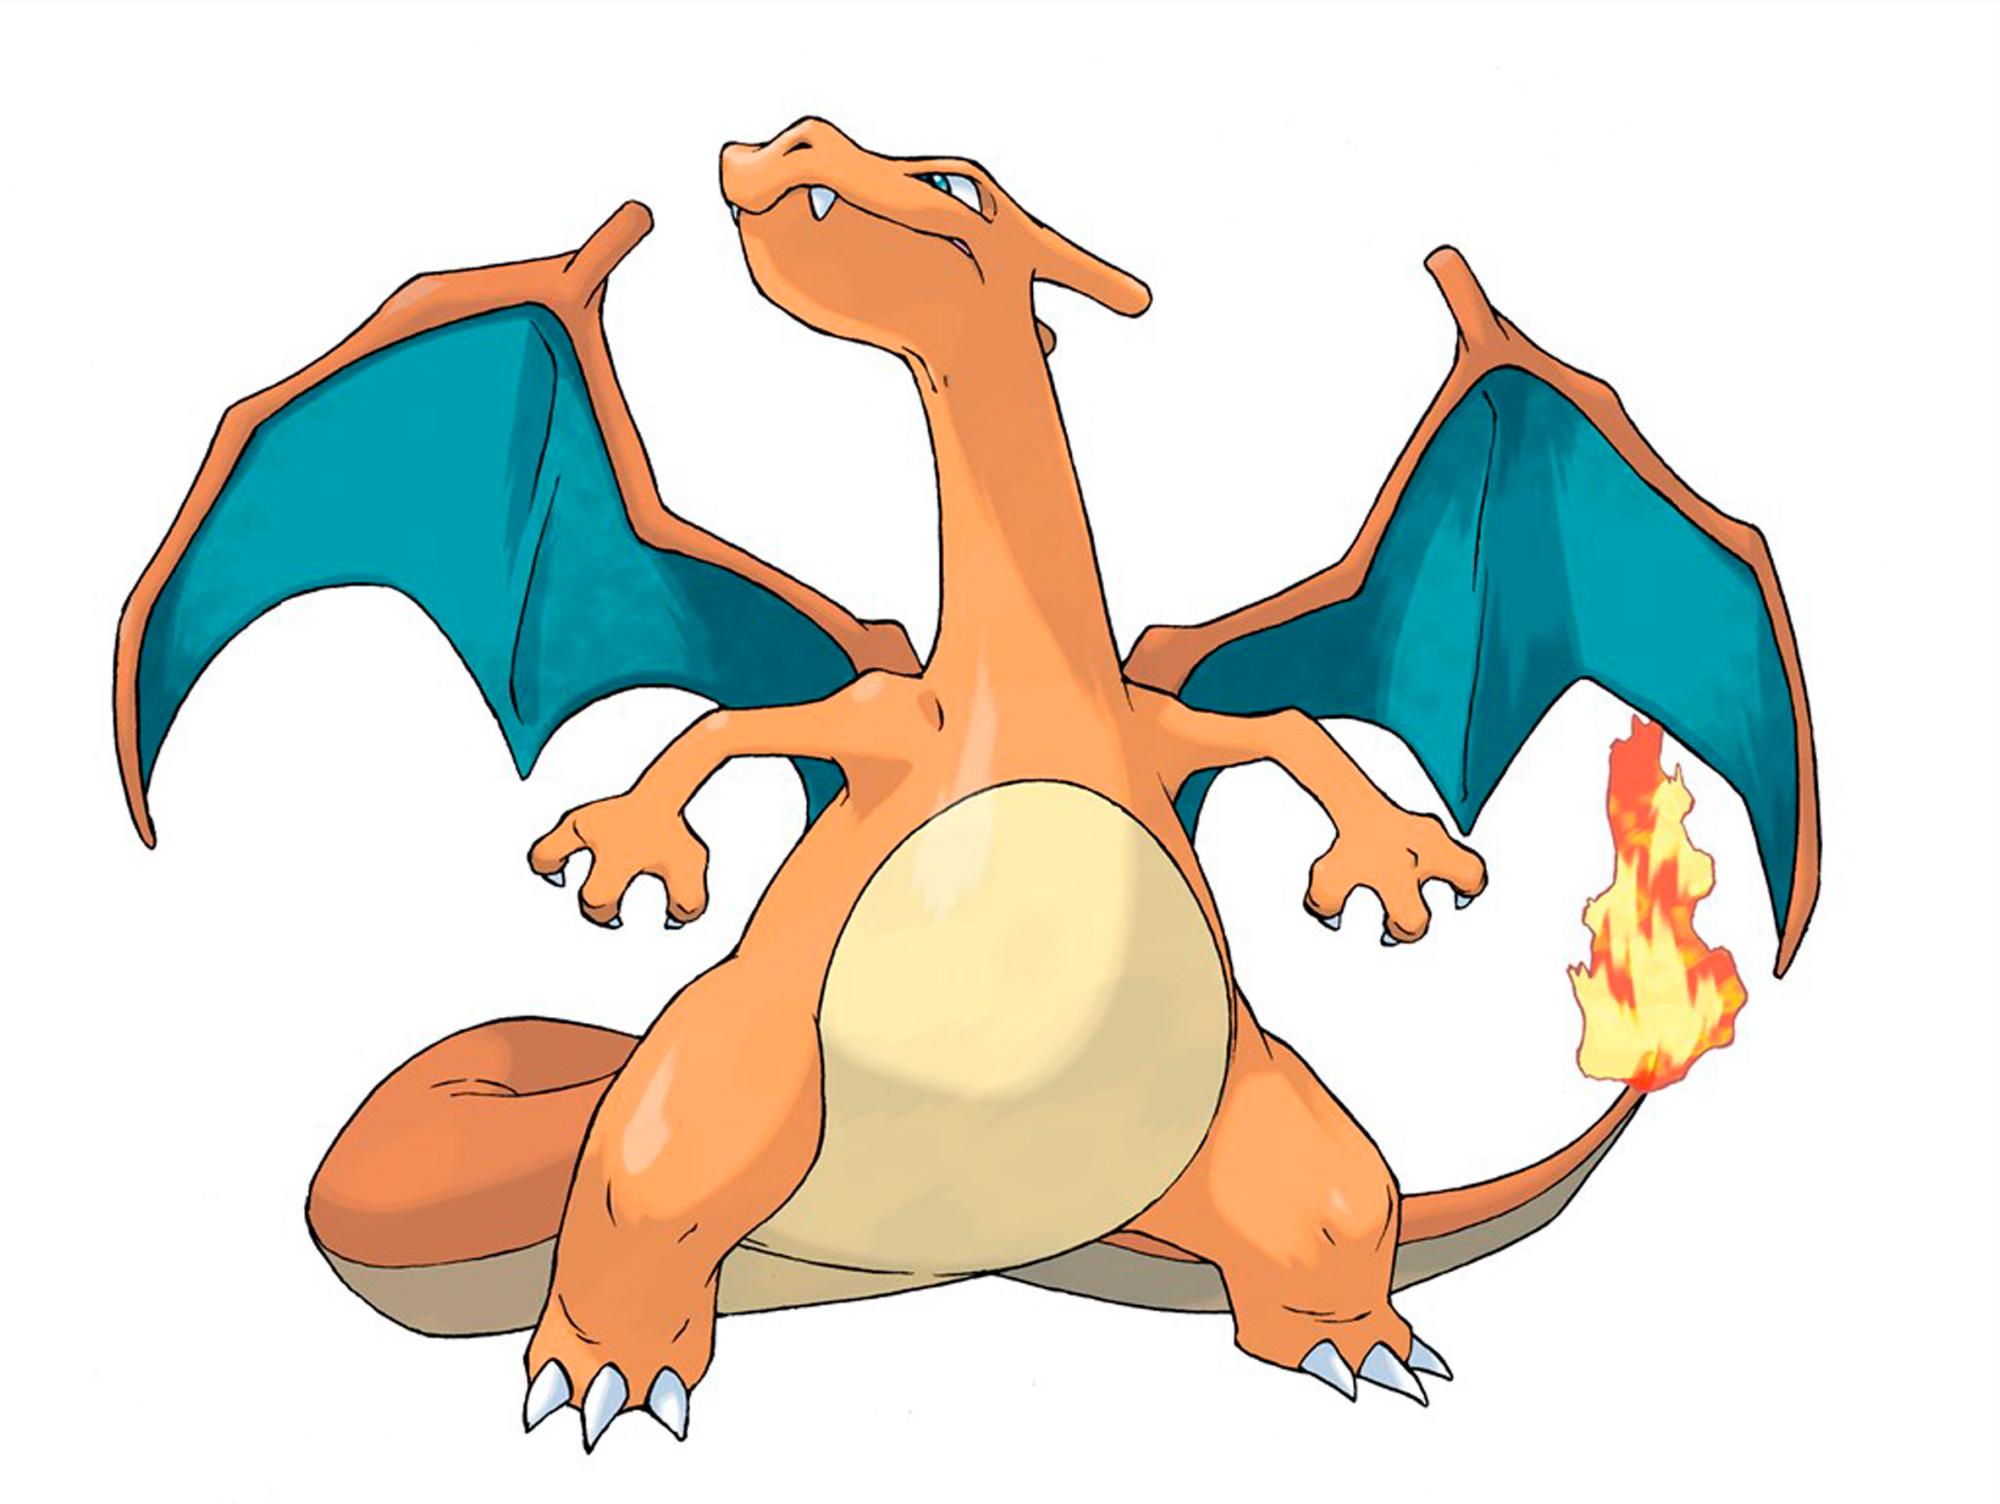 Imagen de Charizard, uno de los dragones más conocidos del juego y la serie Pokémon.